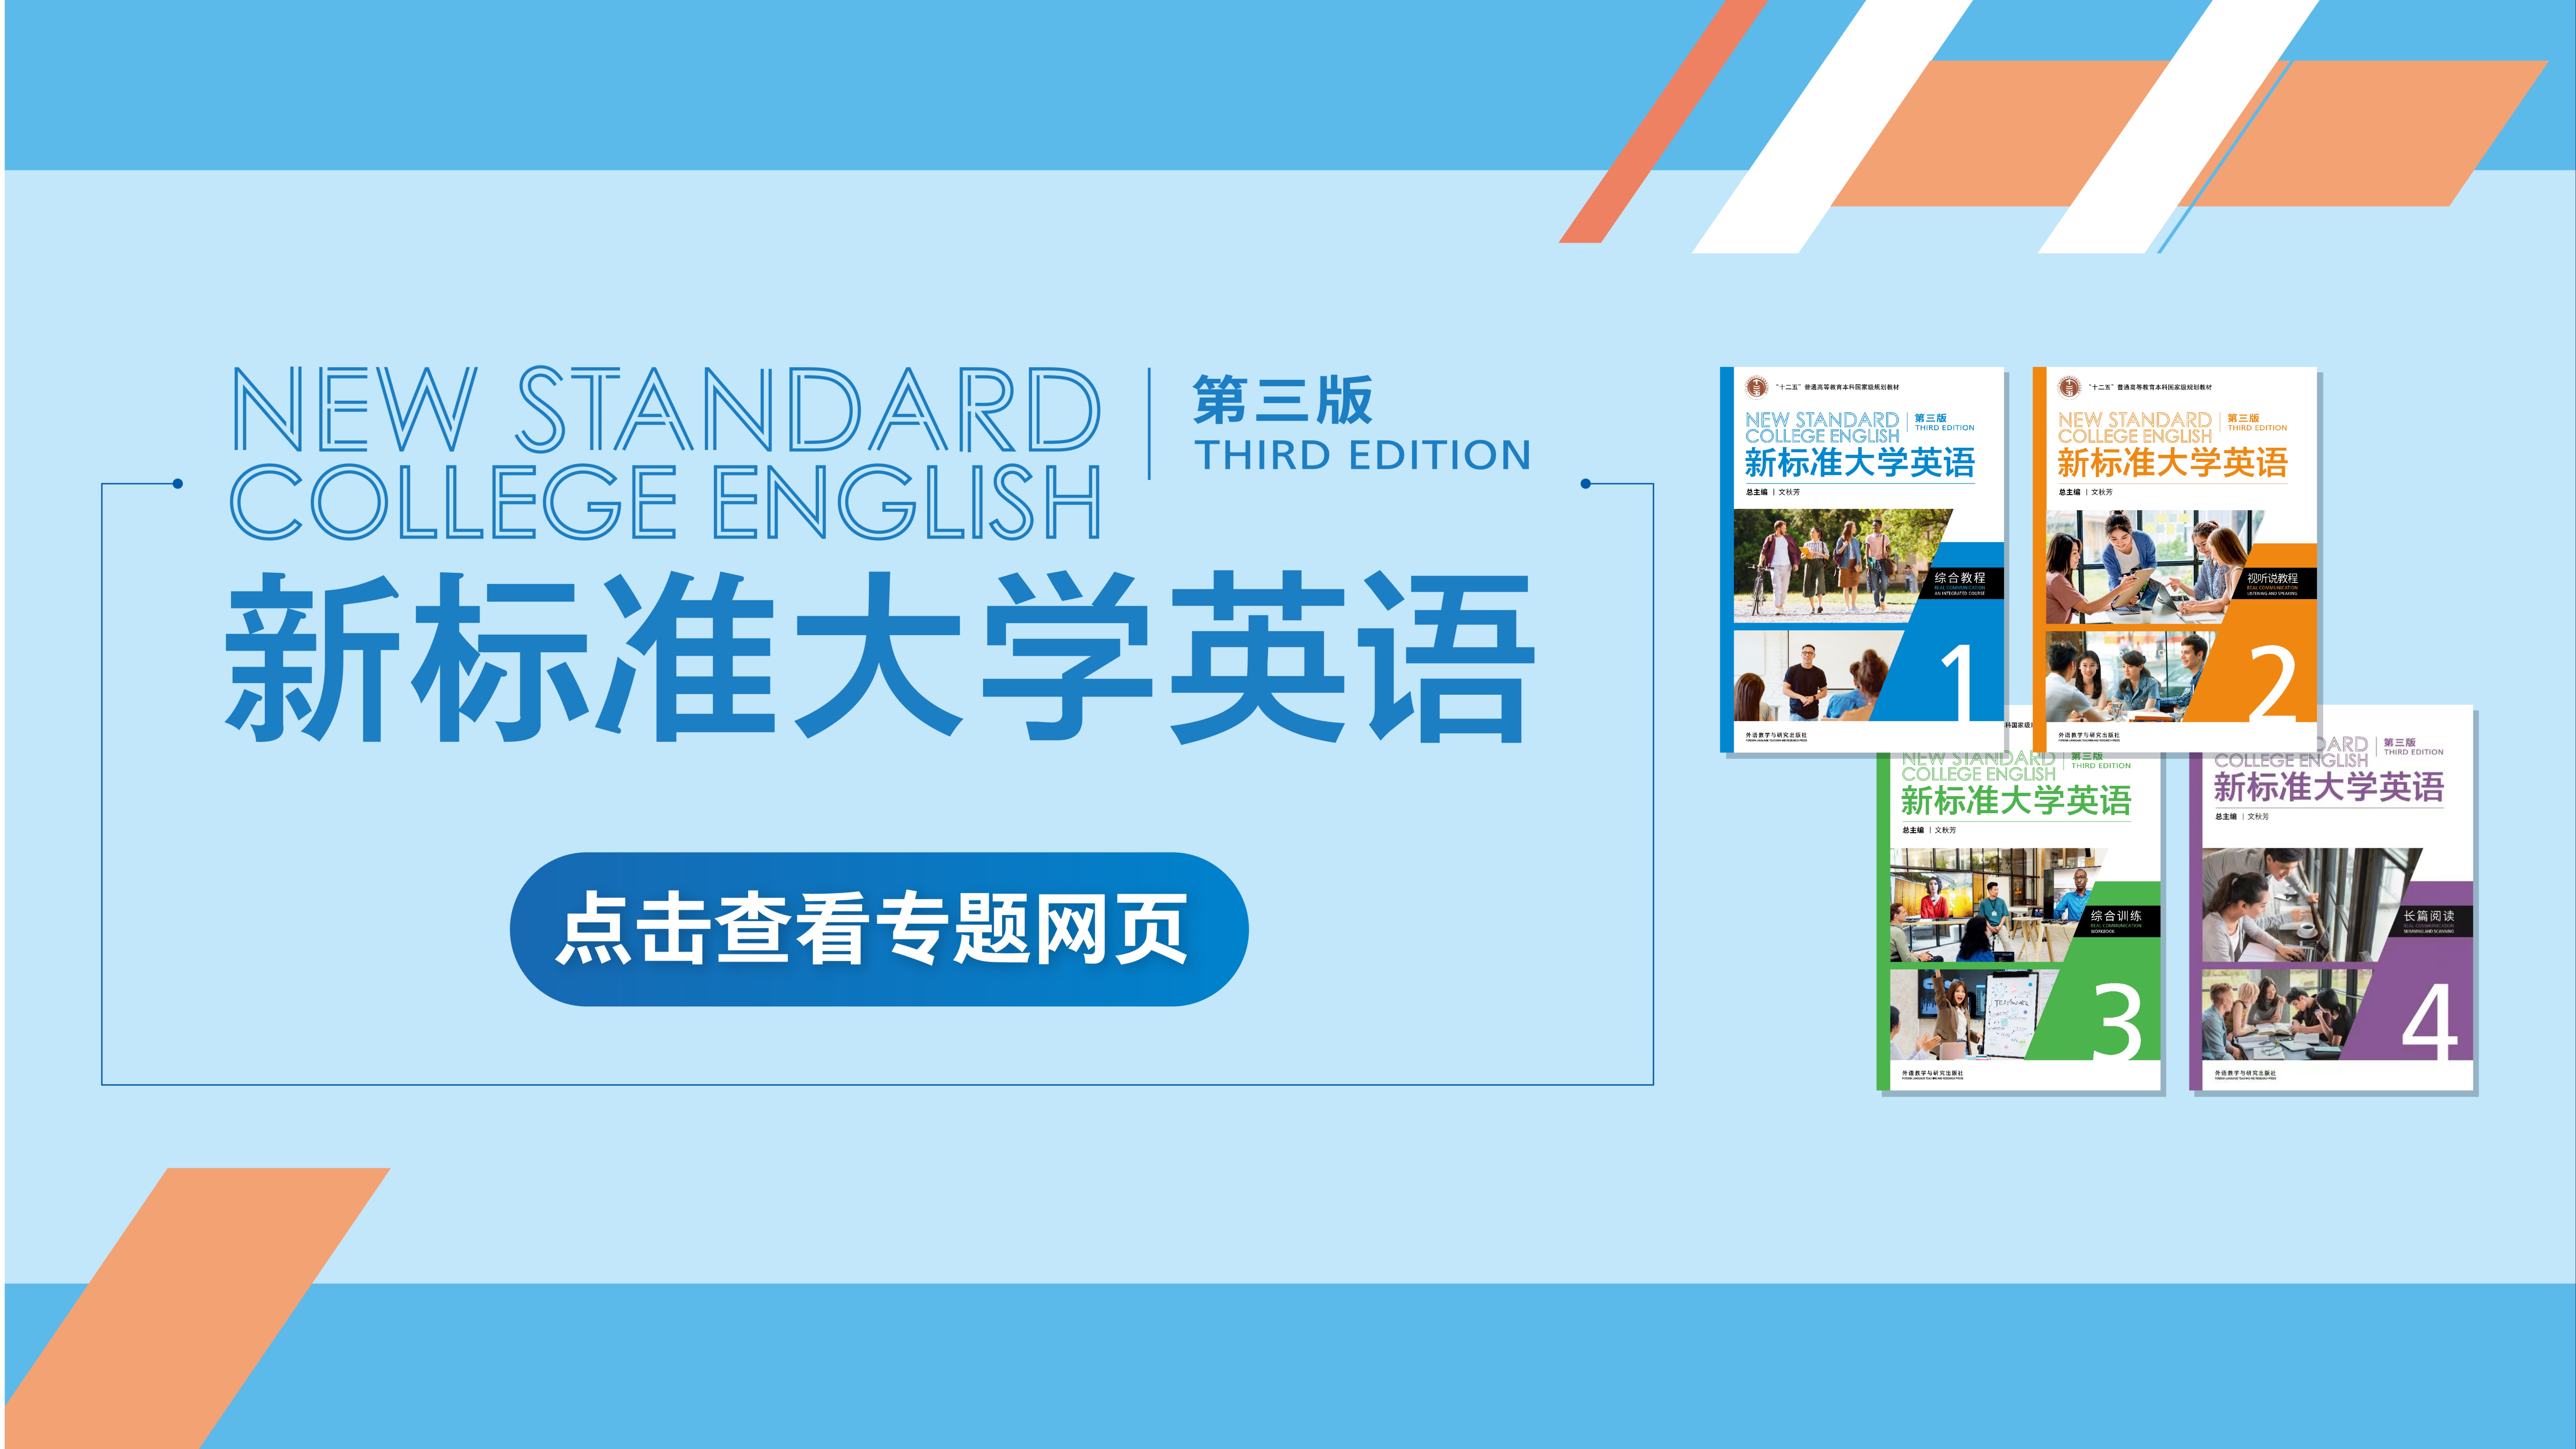   《新标准大学英语》（第三版）系列教材专题网页